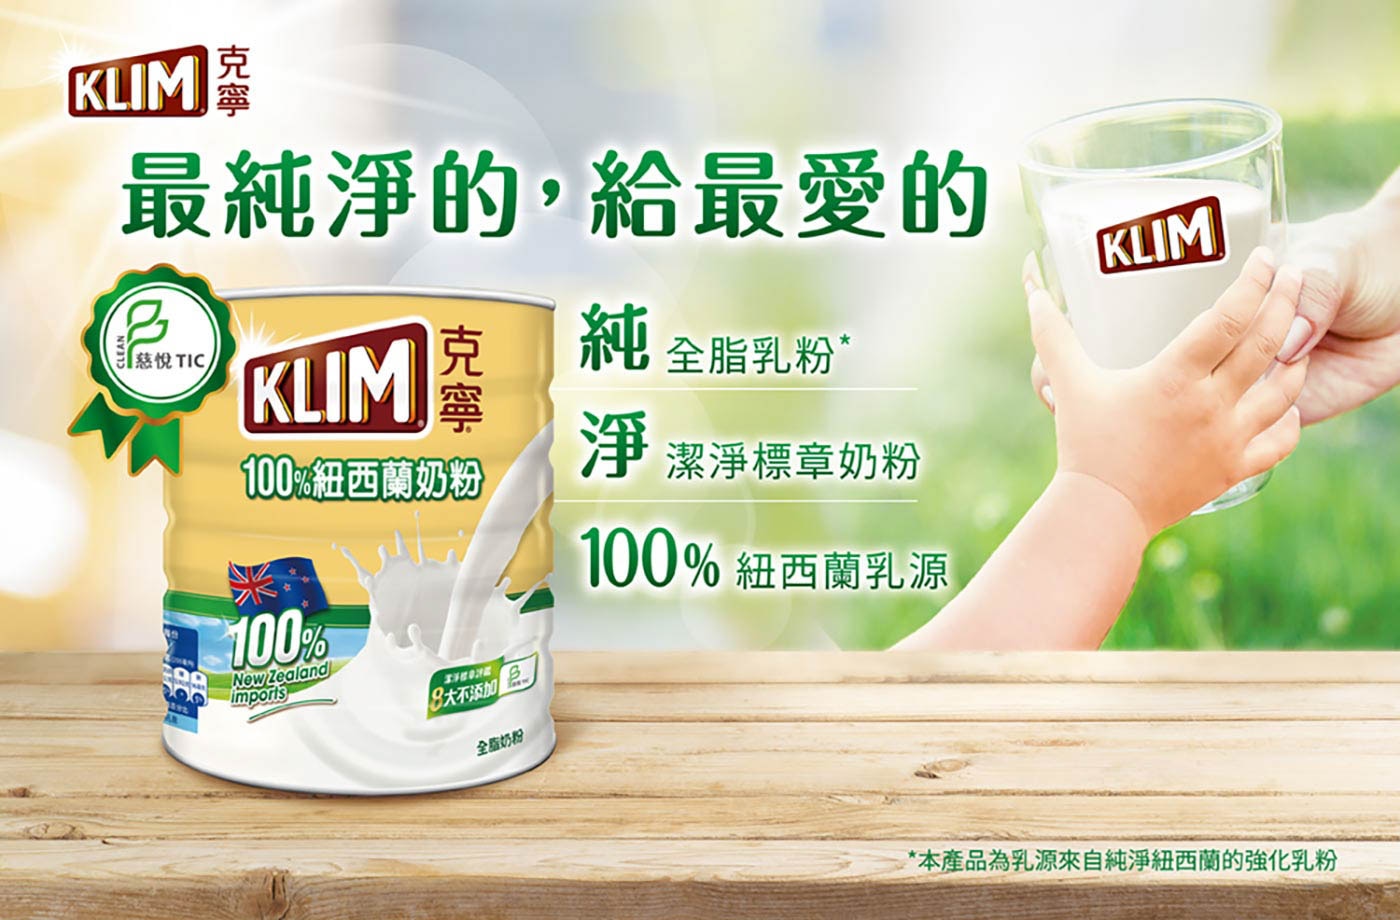 KLIM 克寧紐西蘭全脂奶粉採用100%紐西蘭乳源，慈悅潔淨標章評鑑，純淨香濃營養。